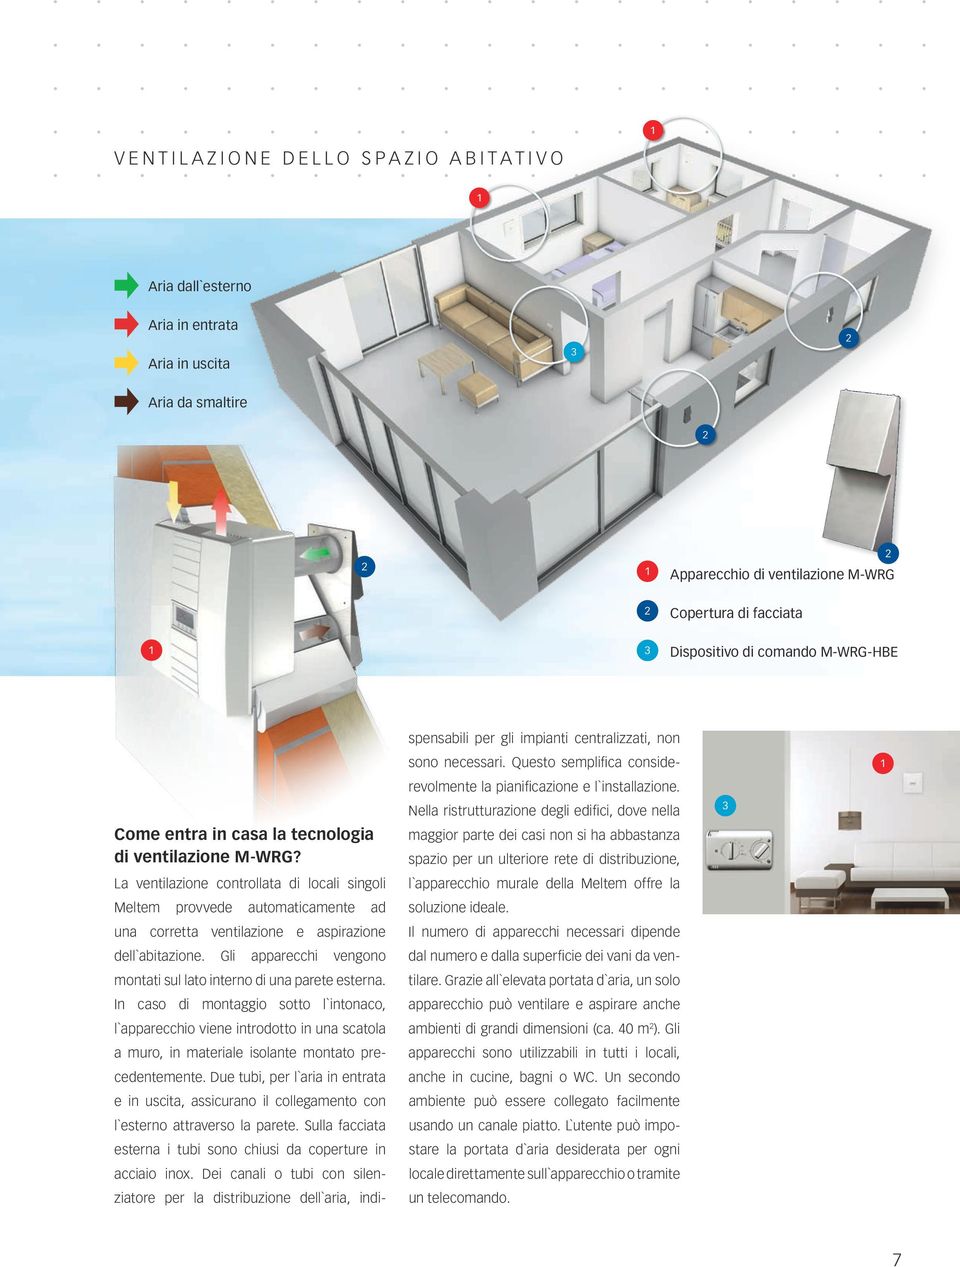 La ventilazione controllata di locali singoli Meltem provvede automaticamente ad una corretta ventilazione e aspirazione dell`abitazione.